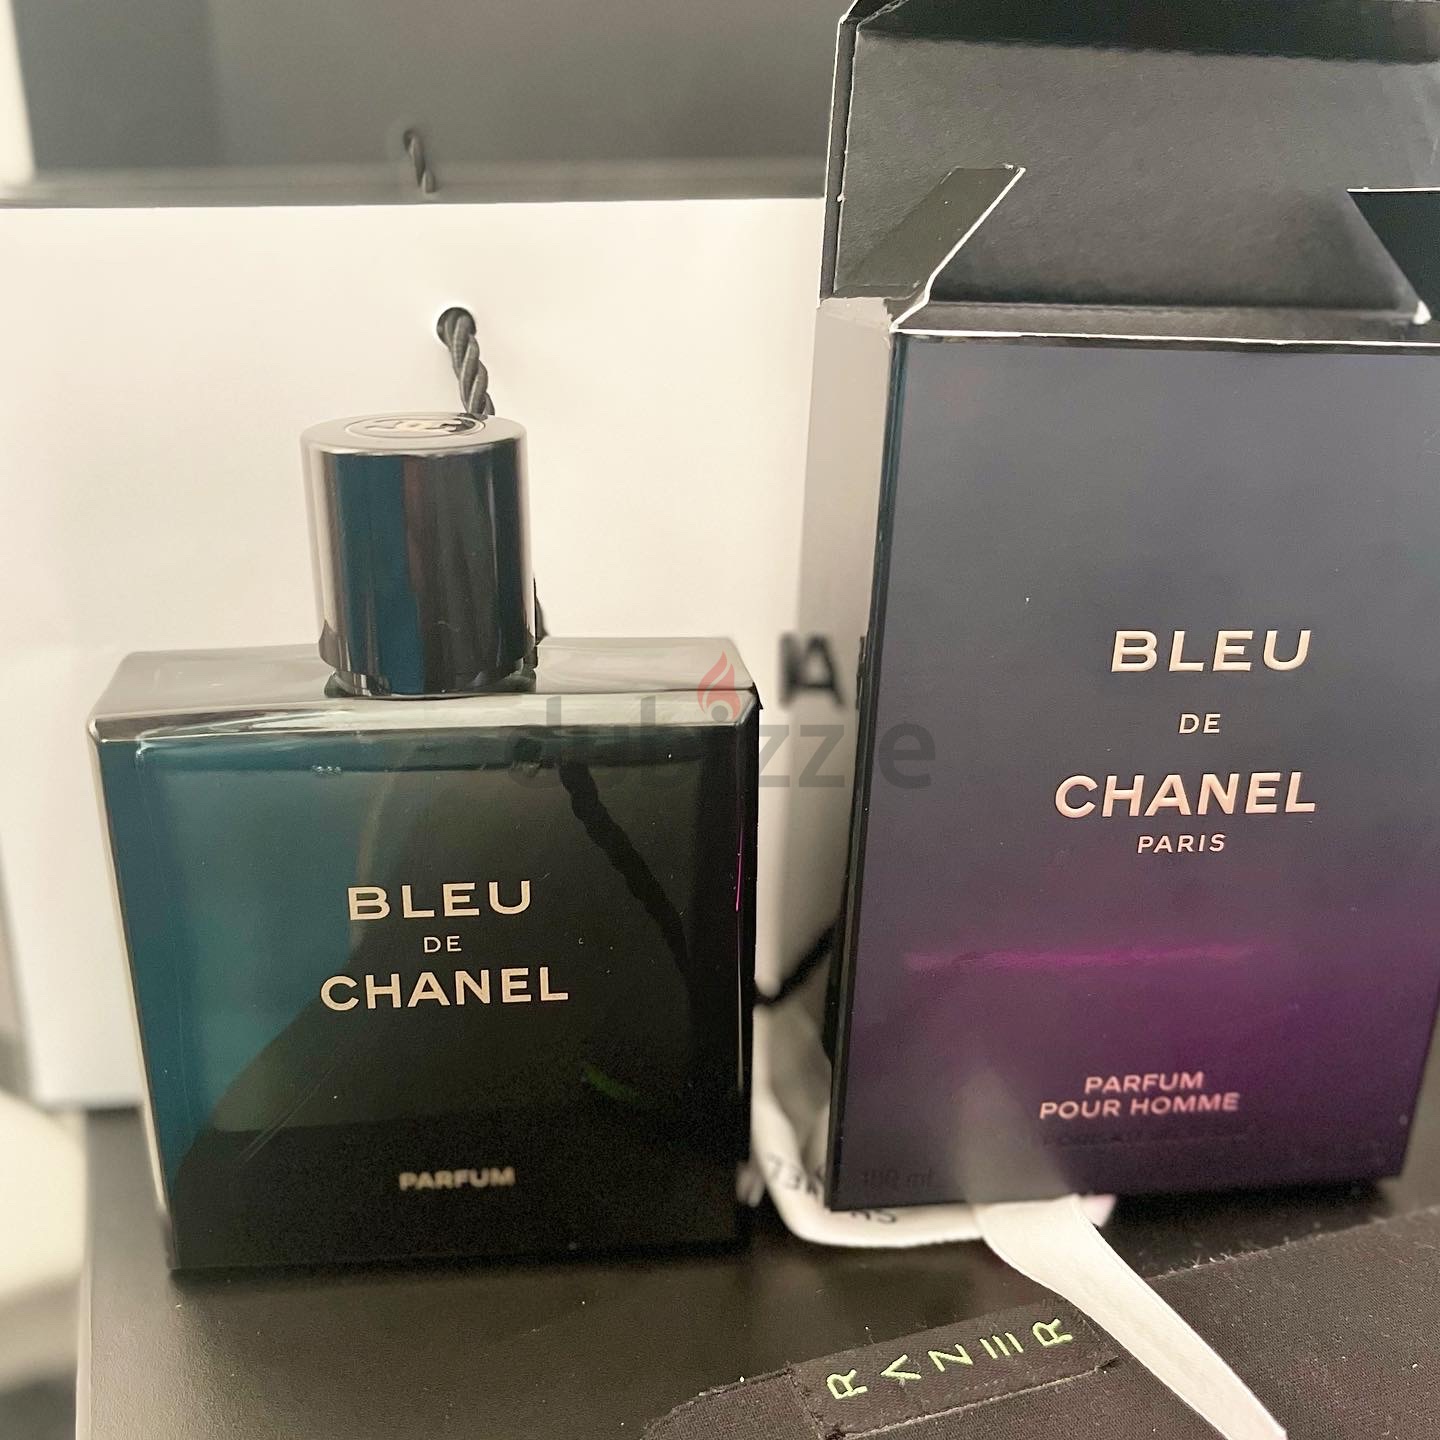 Amazoncom  Bleu De Chanel by Chanel Eau De Parfum Spray 34 oz for Men   Beauty  Personal Care